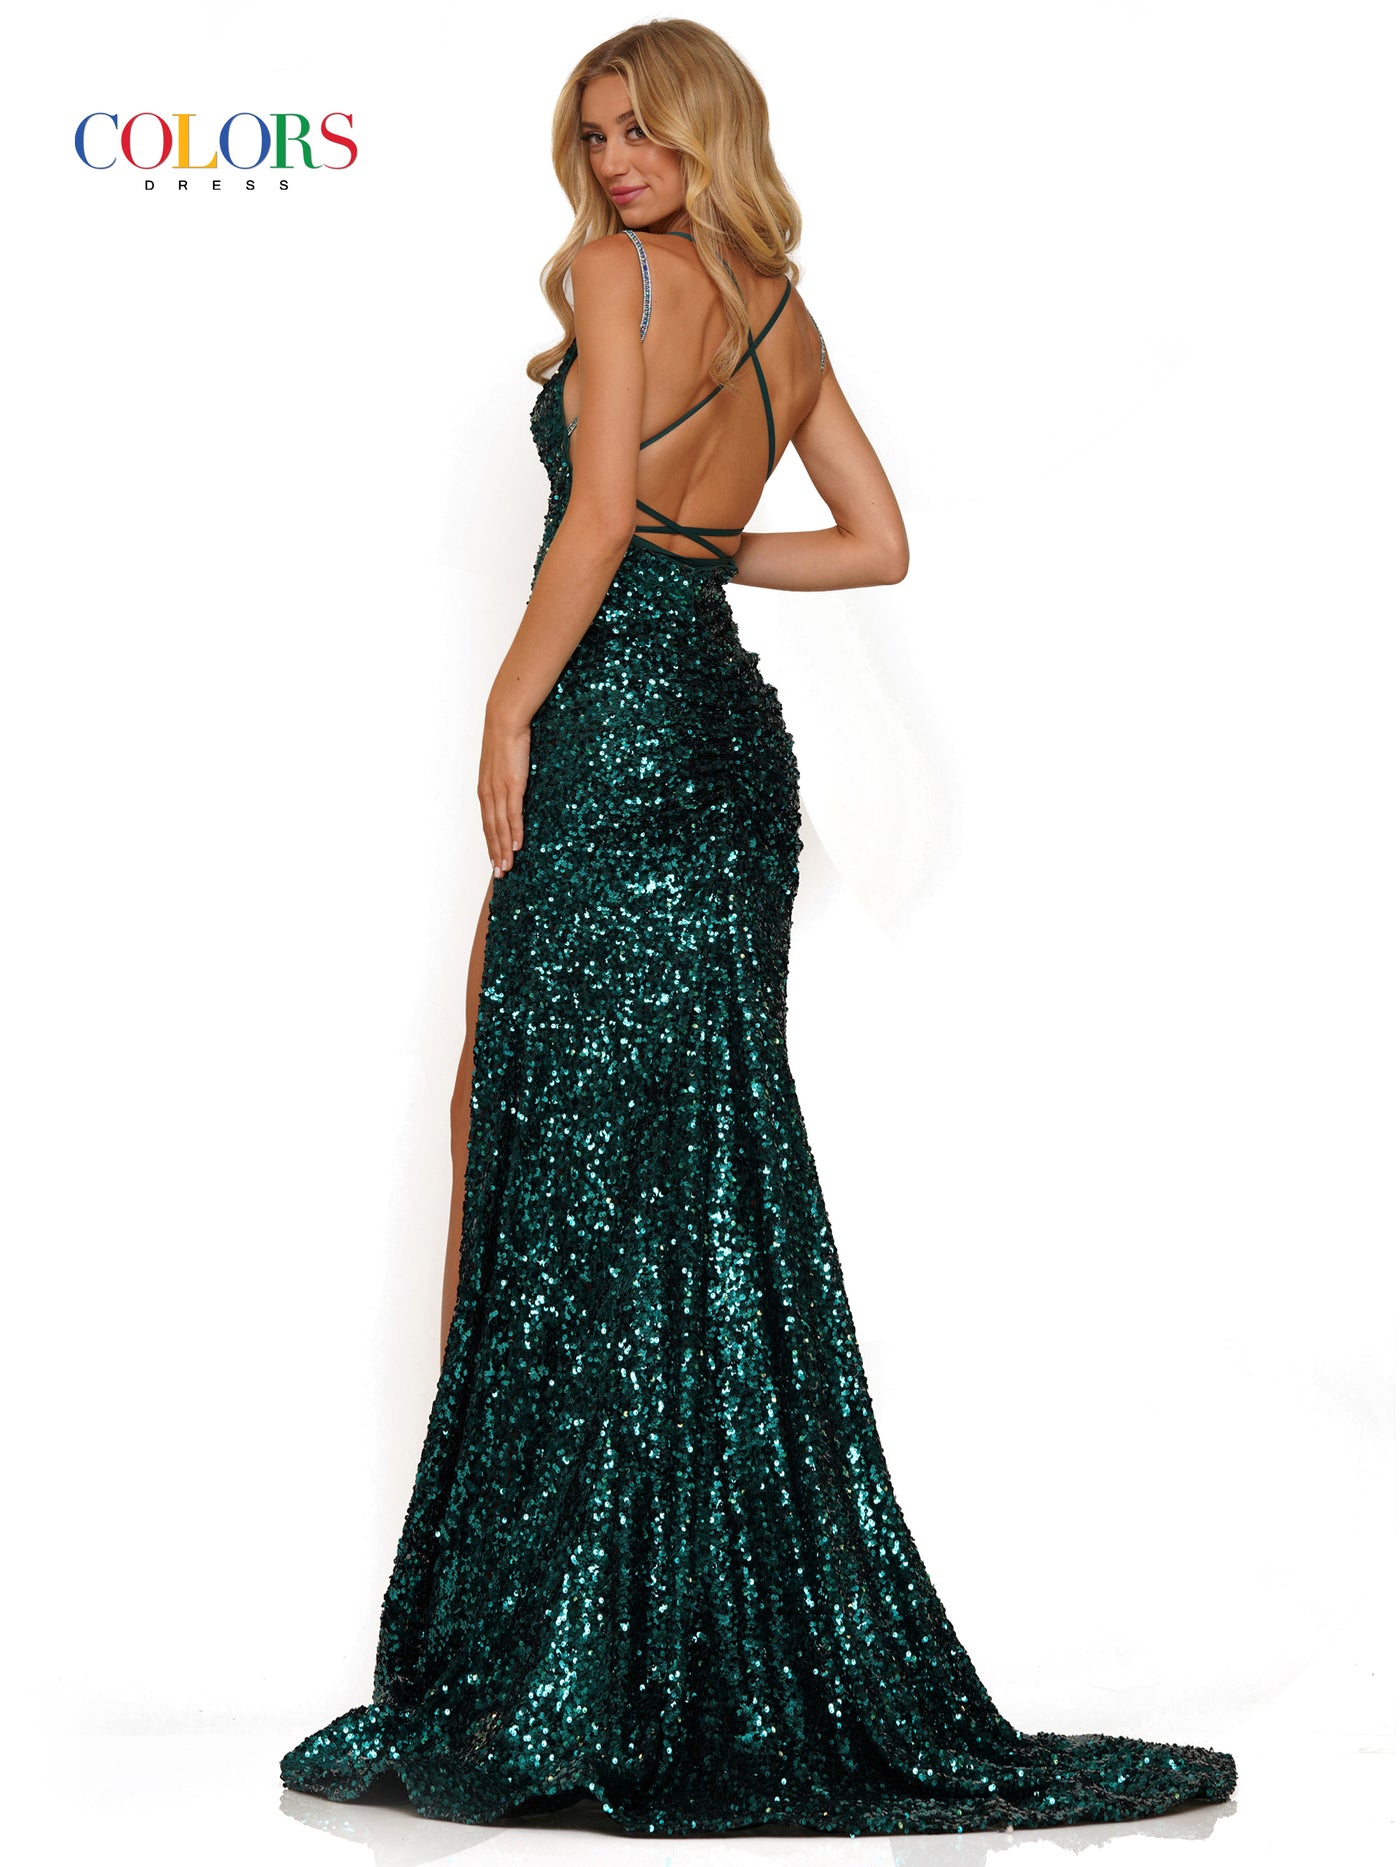 Colors Dress 2975 Emerald Sequins Prom Dress